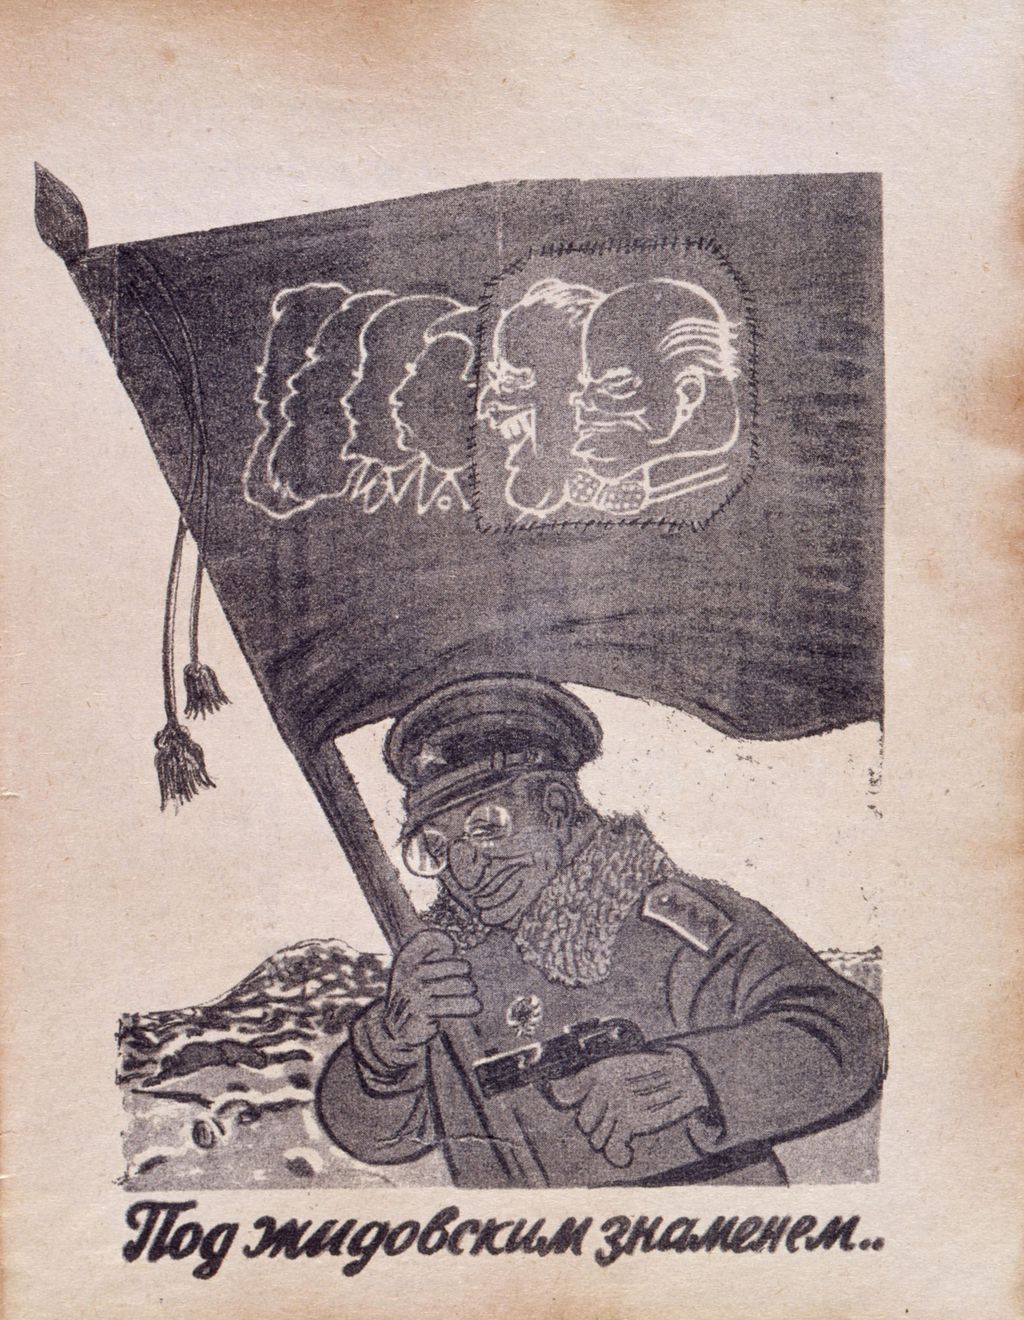 Exponat: Flugblatt der Wehrmacht mit Aufforderung zum Überlaufen, 1943